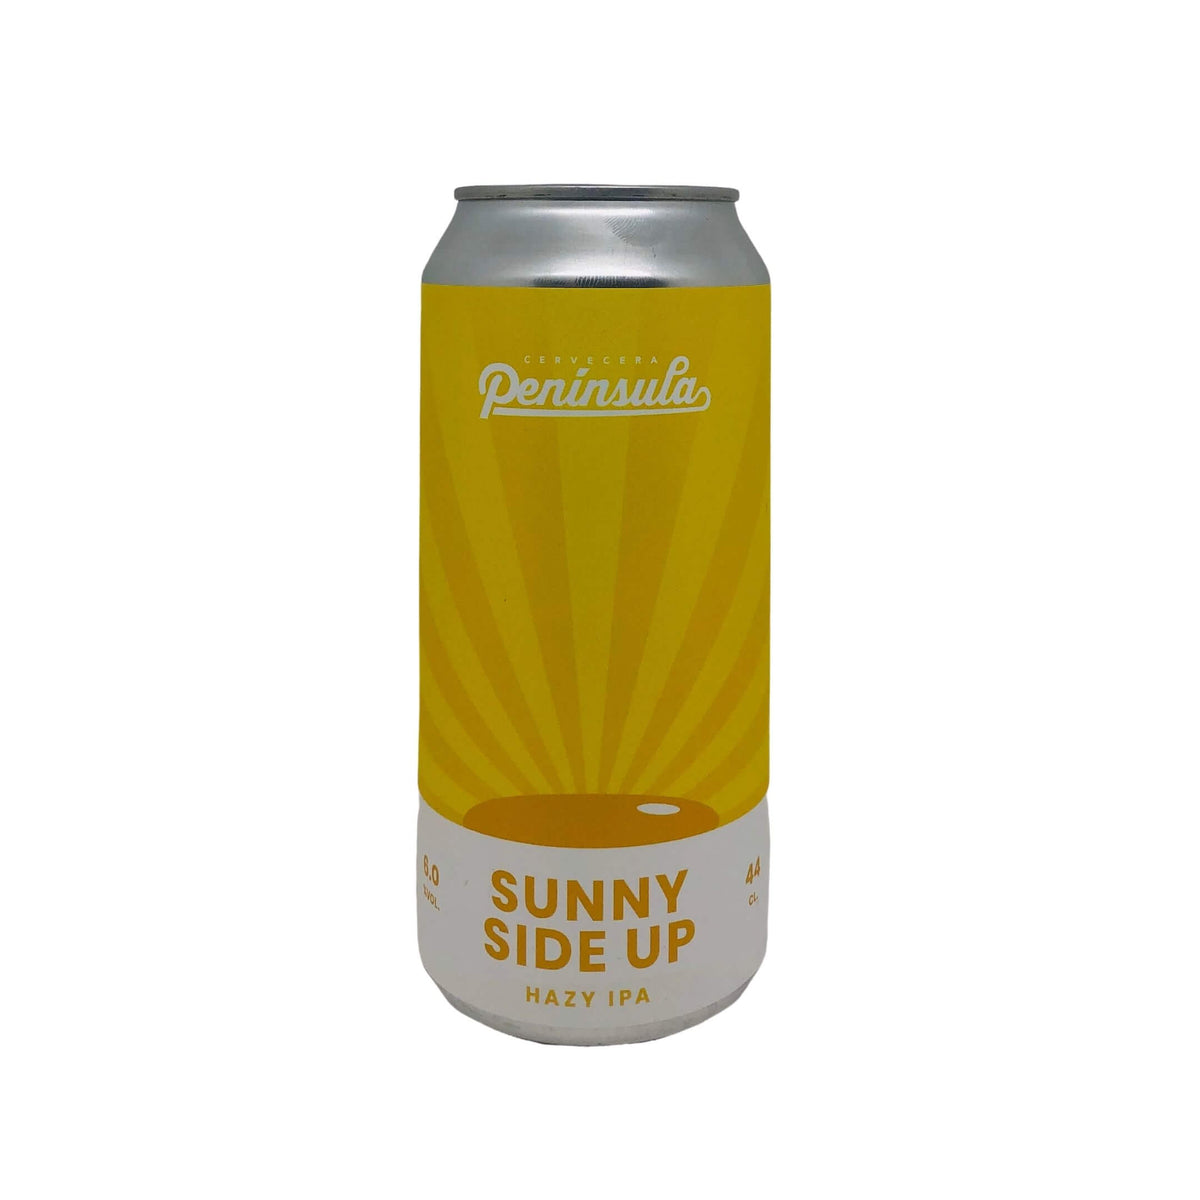 Sunny Side Up | Cervecera Península - Cans & Corks